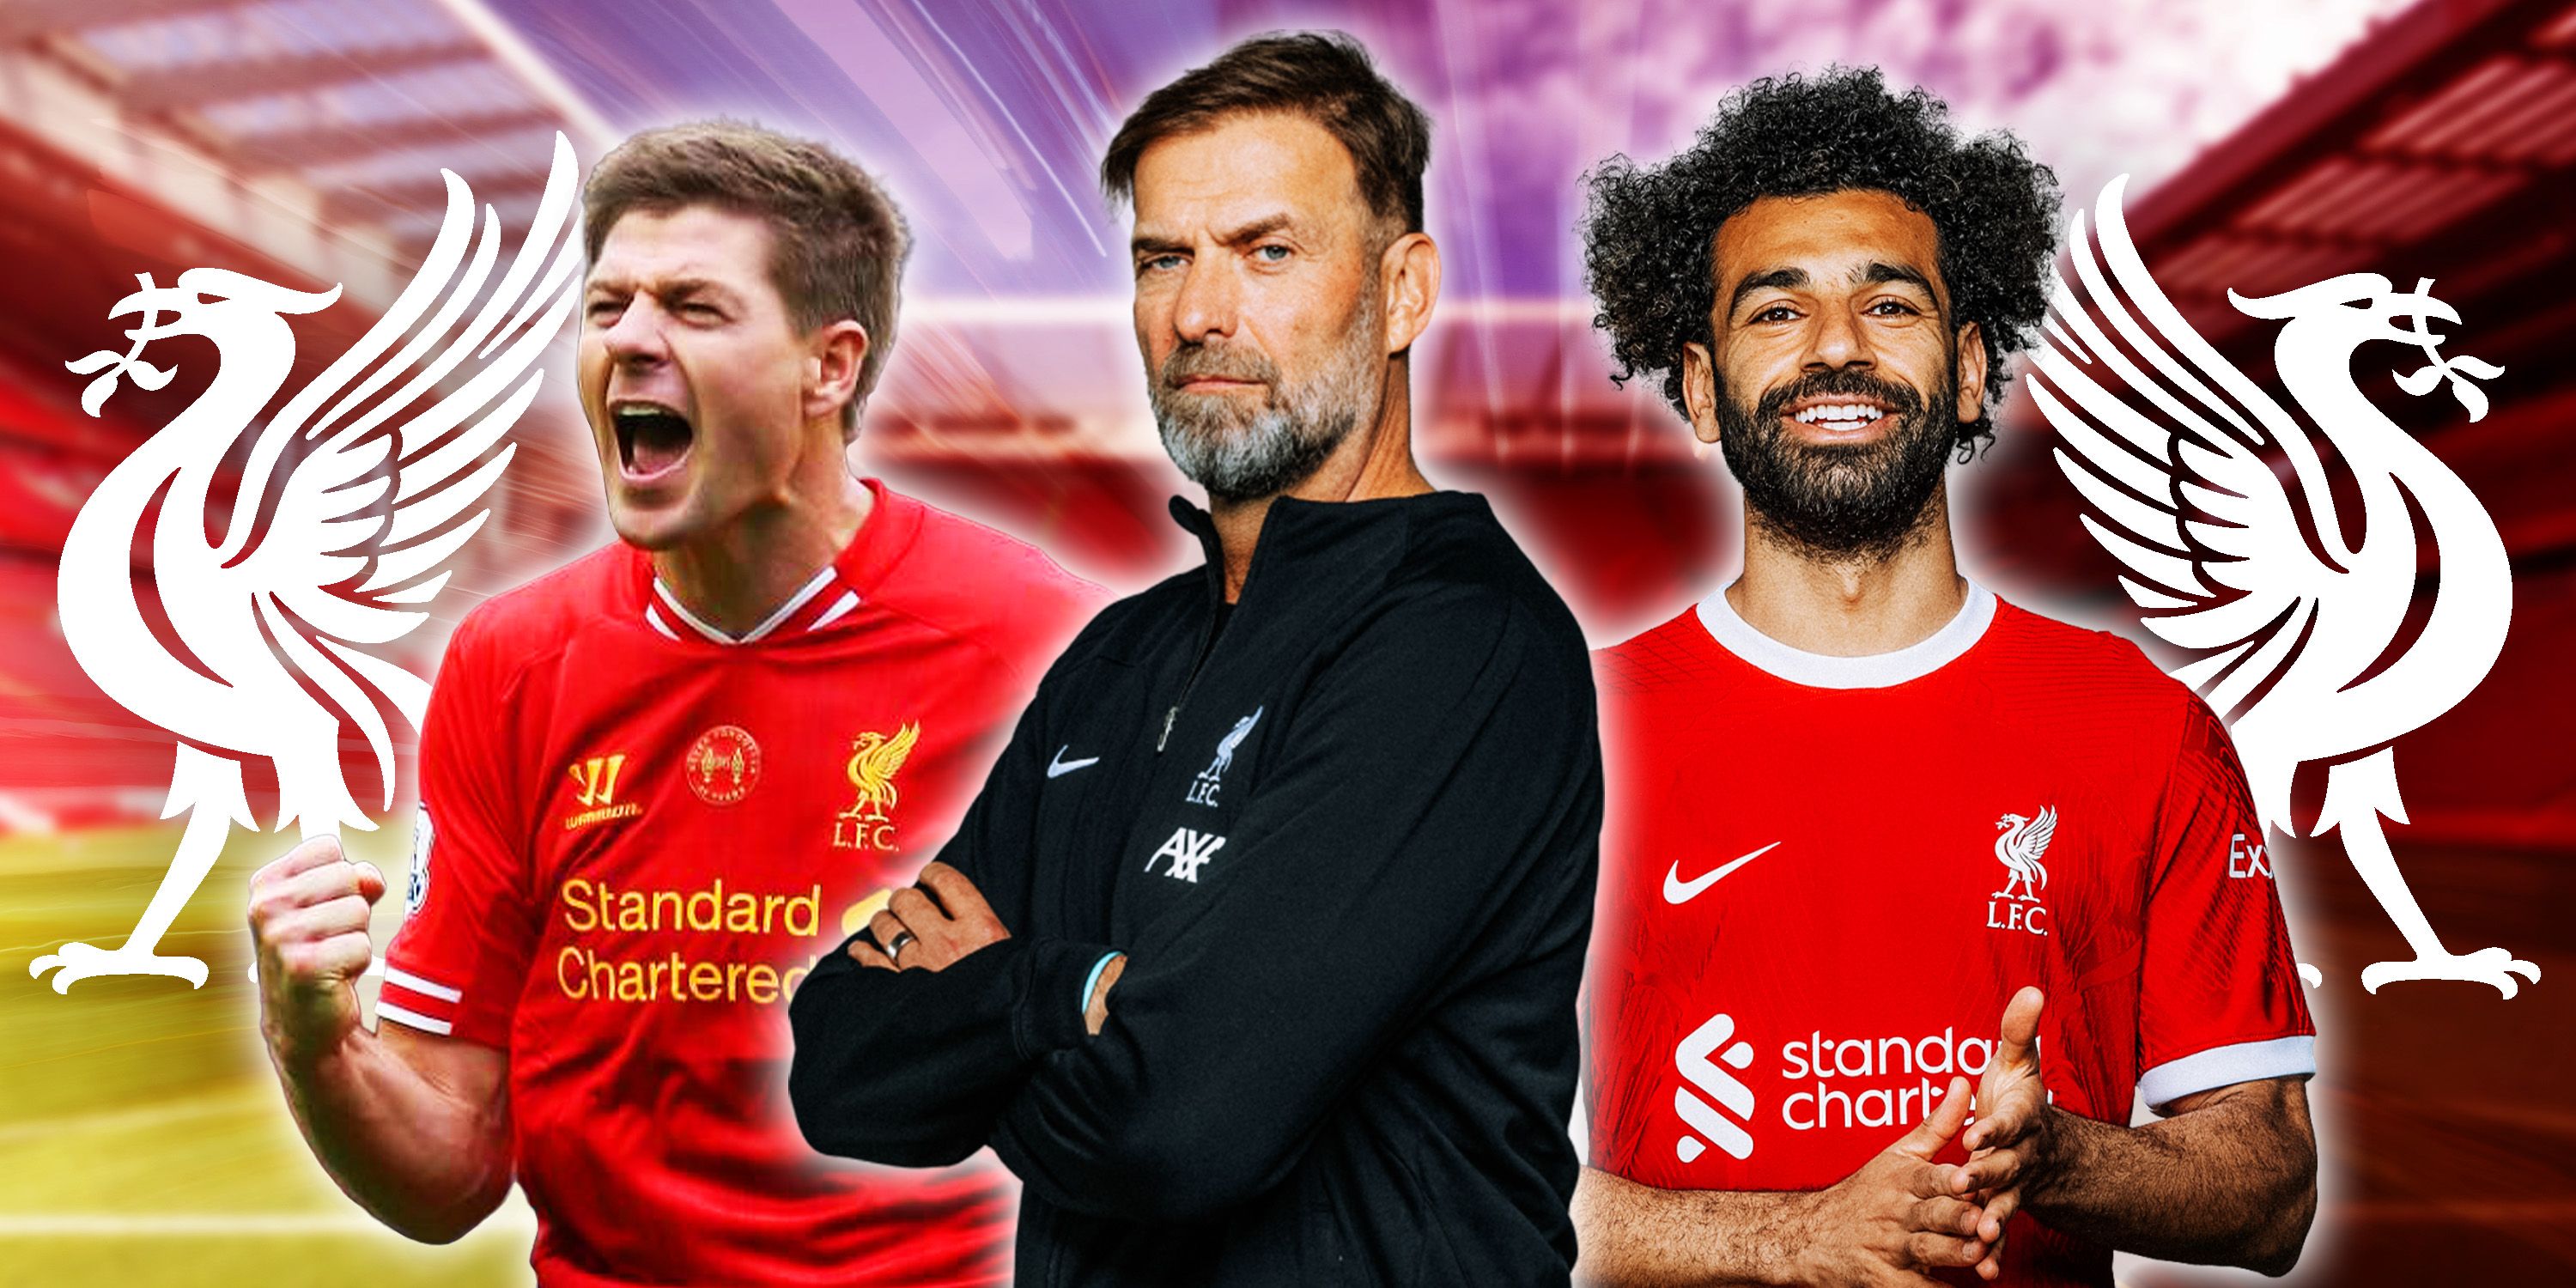 Collage featuring Steven Gerrard, Jurgen Klopp and Mohamed Salah.